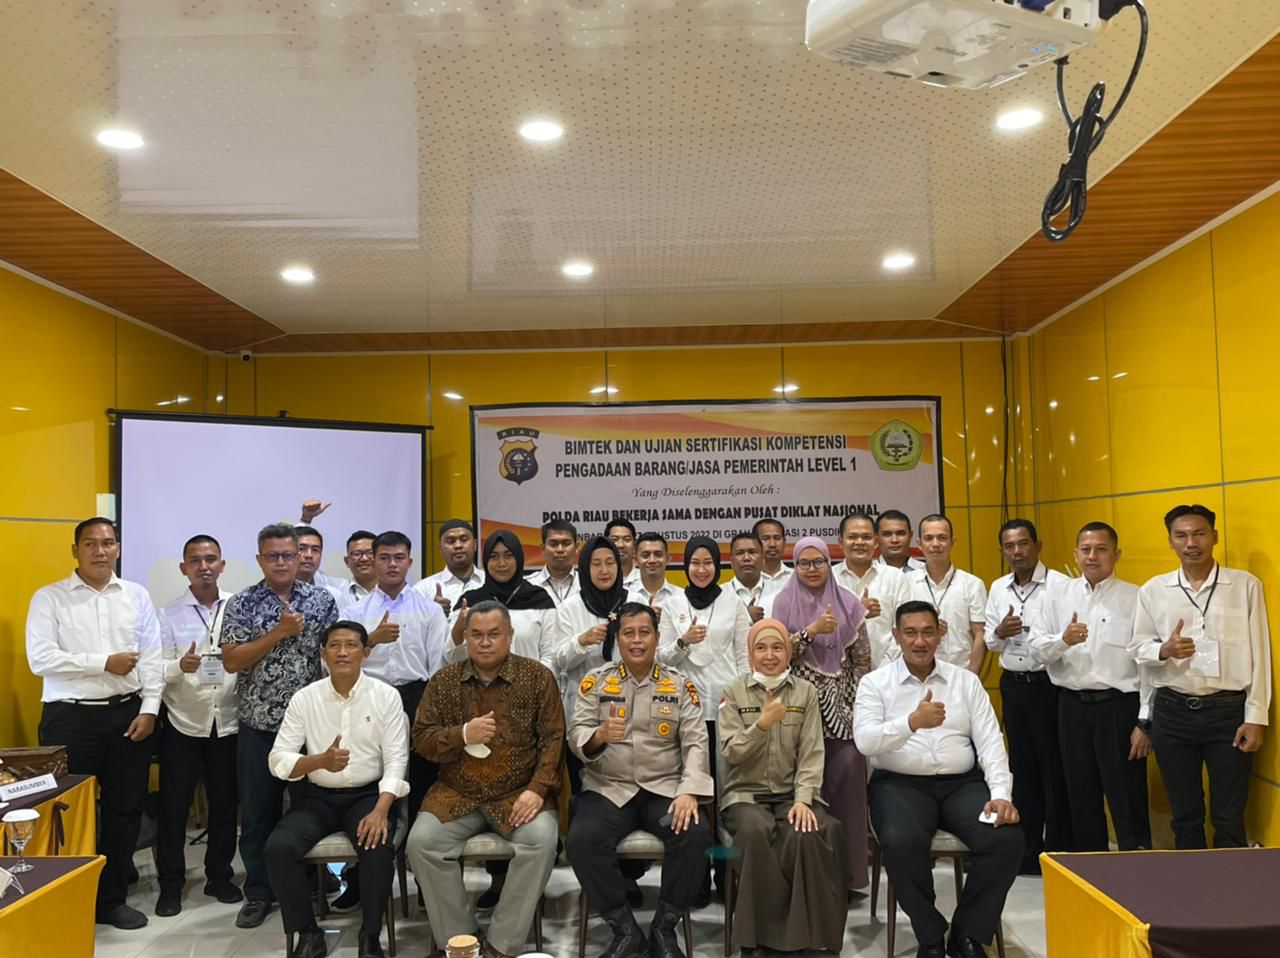 Polda Riau Kirim Peserta Uji Sertifikasi Pengadaan Barang dan Jasa Pusdiklat Nasional